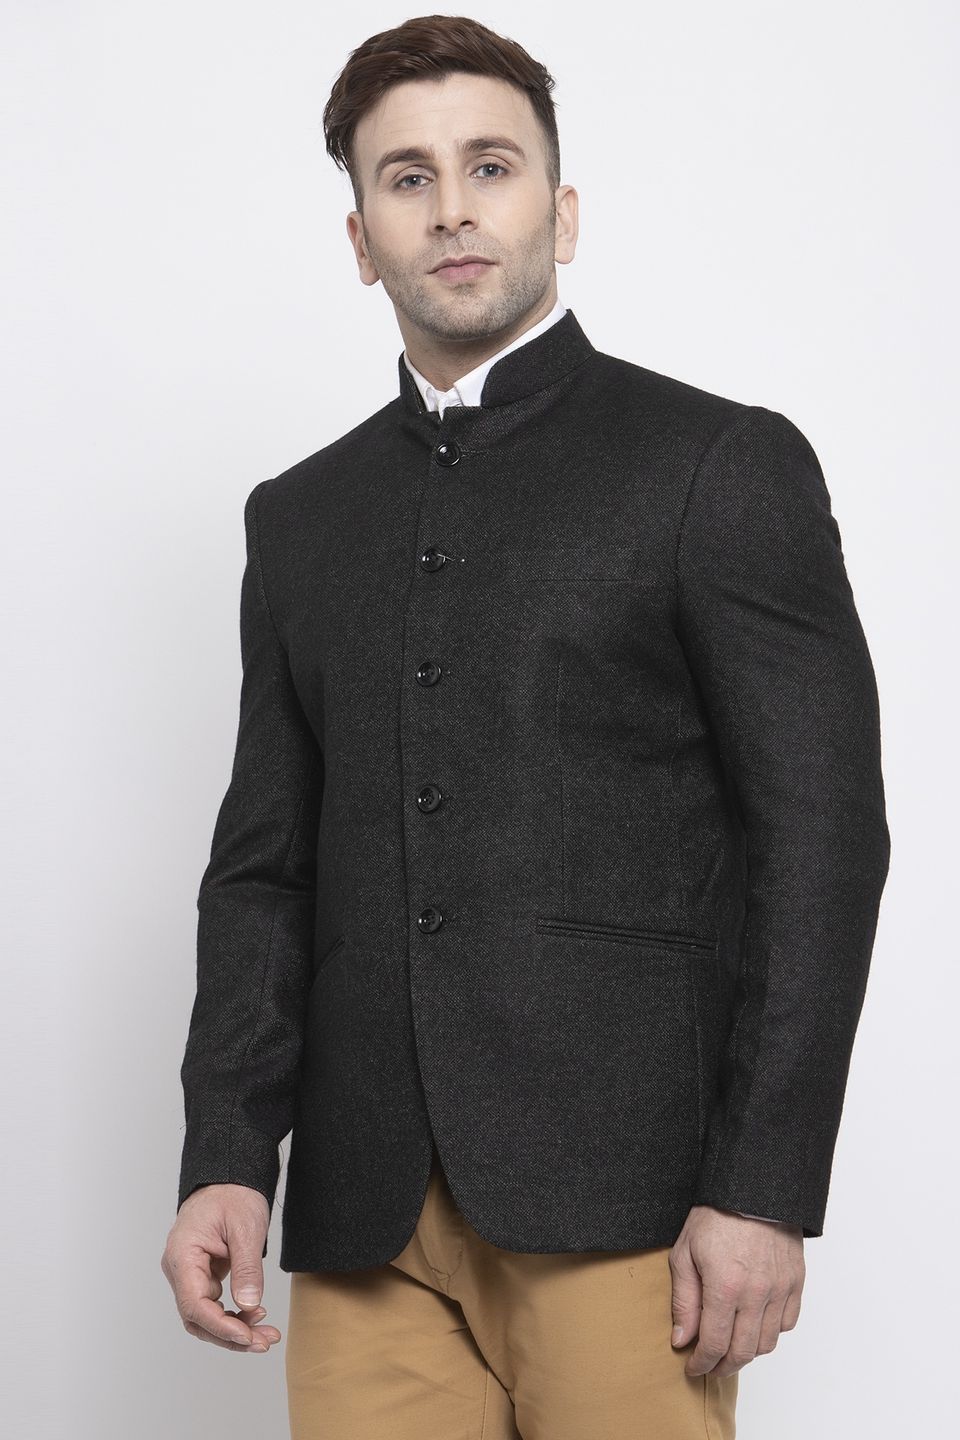 Wintage Men's Tweed Wool Casual and Festive Blazer Coat Jacket:Black